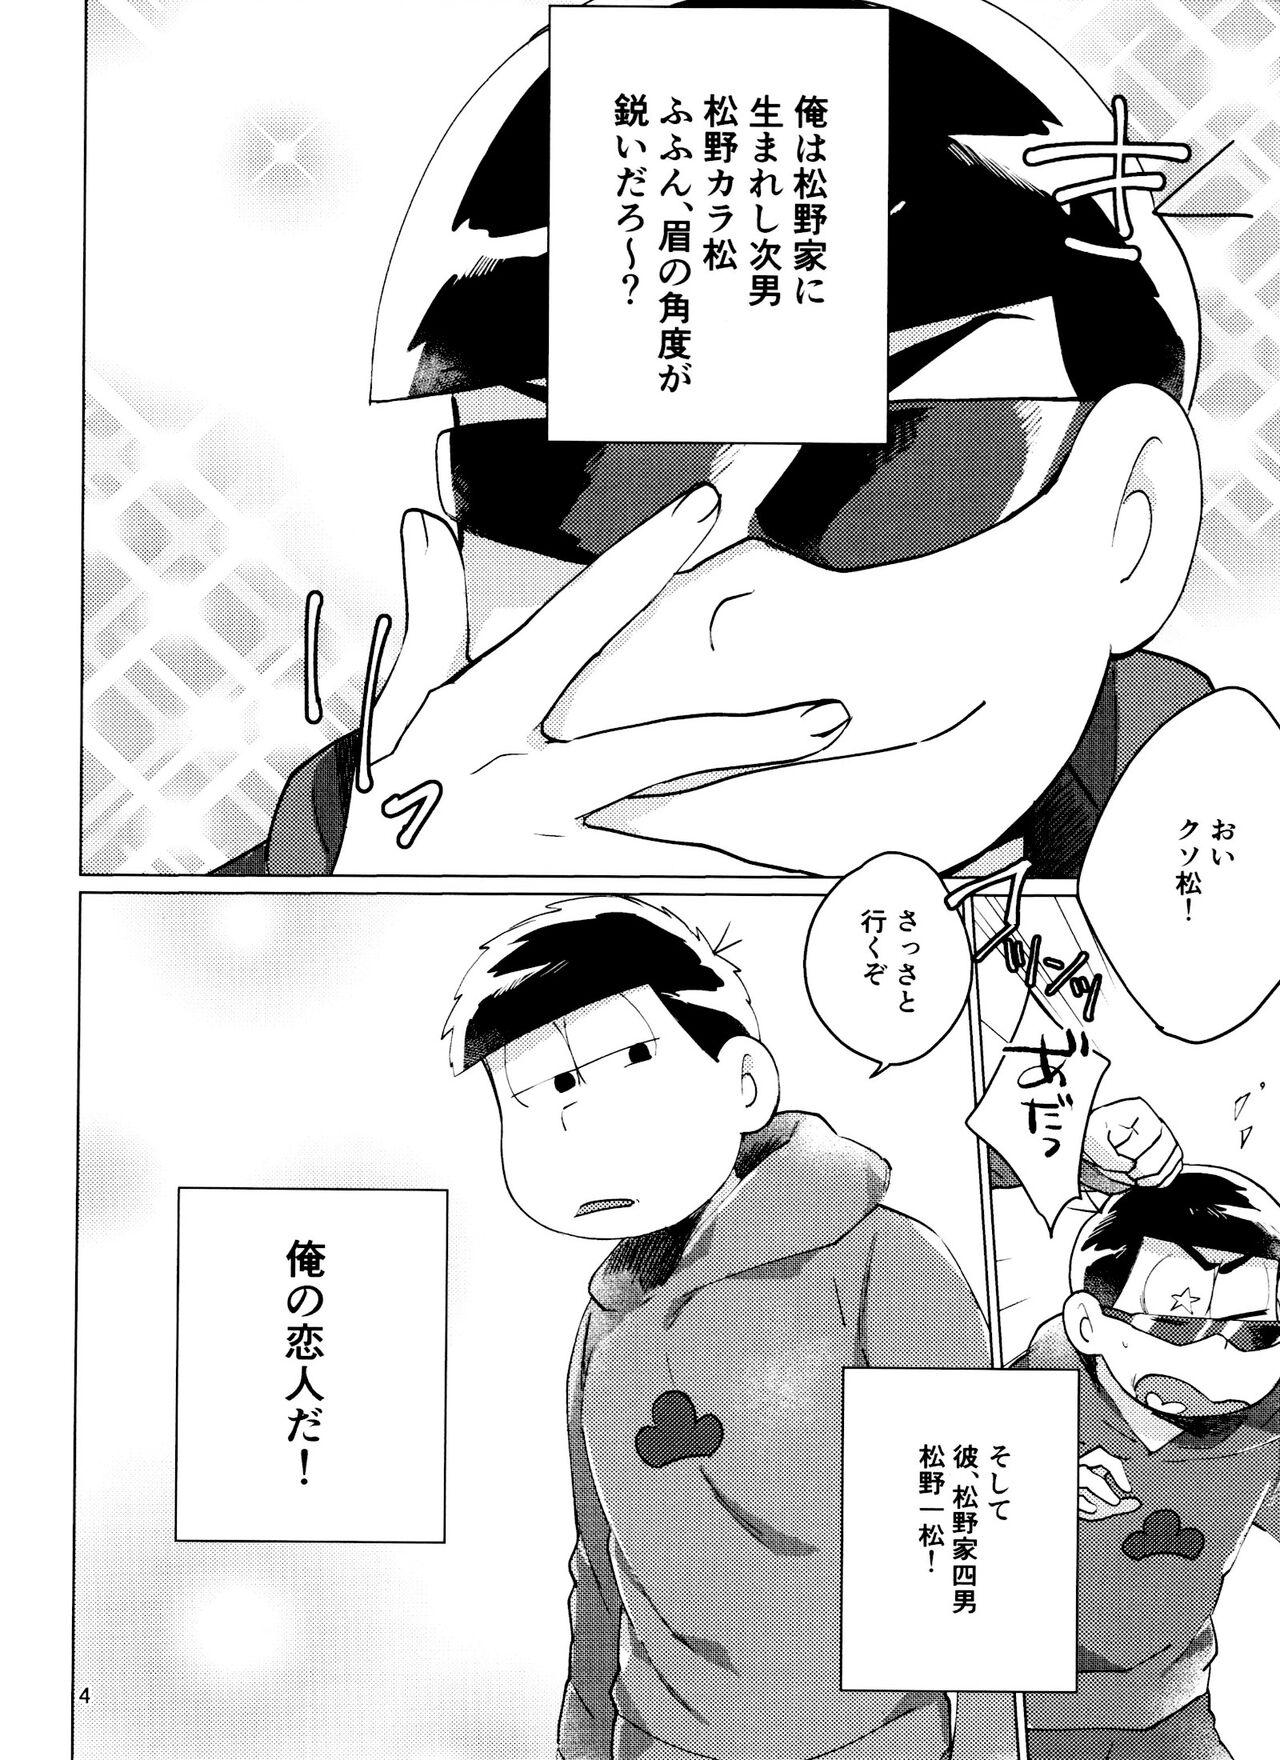 Pasivo Osomatsu-san Nekasete Kure, Burazaa!! - Osomatsu san Show - Page 4